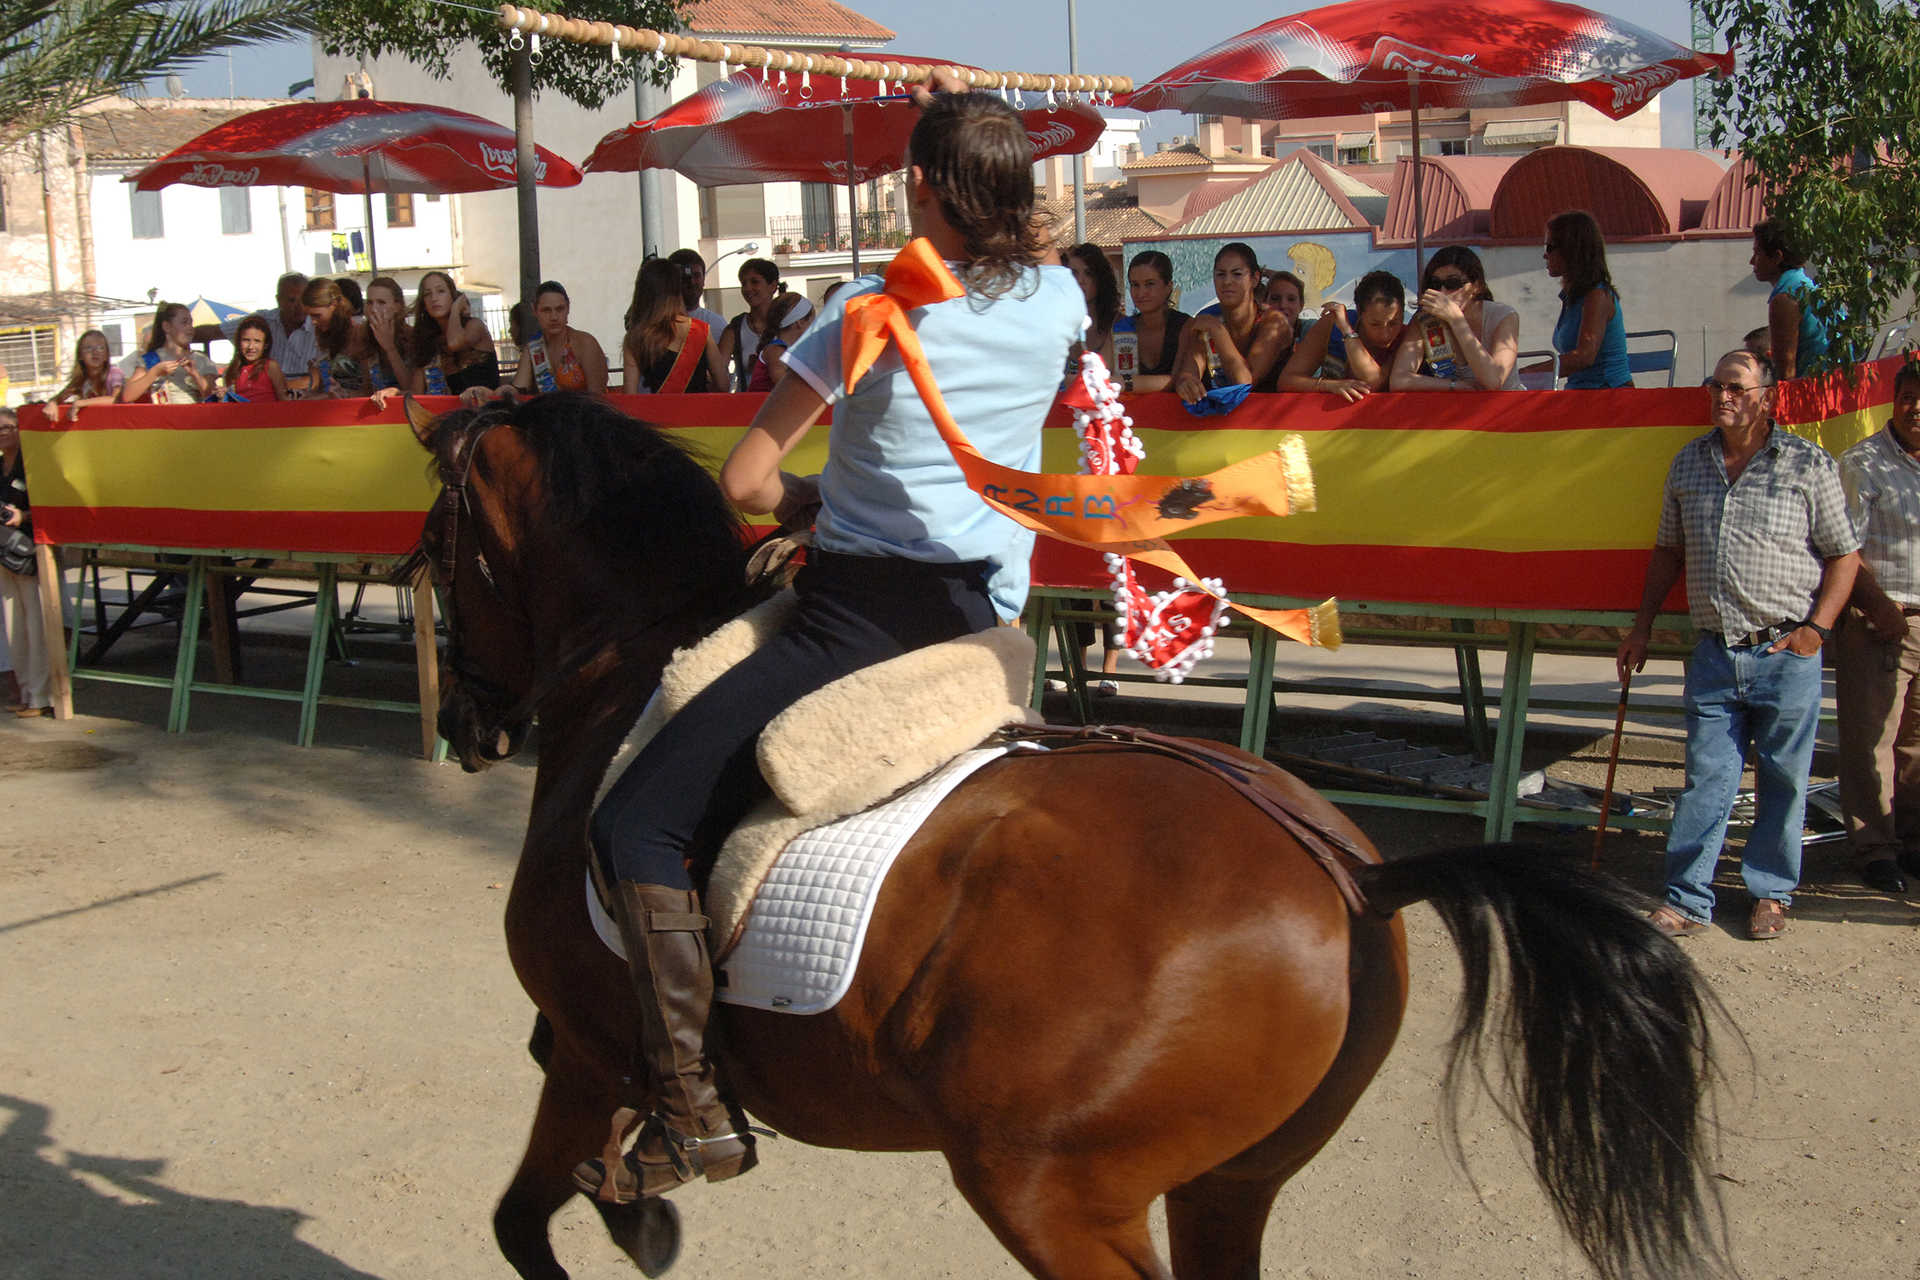 Fiestas Patronales de Segorbe. Fiesta de Interés Turístico Nacional.